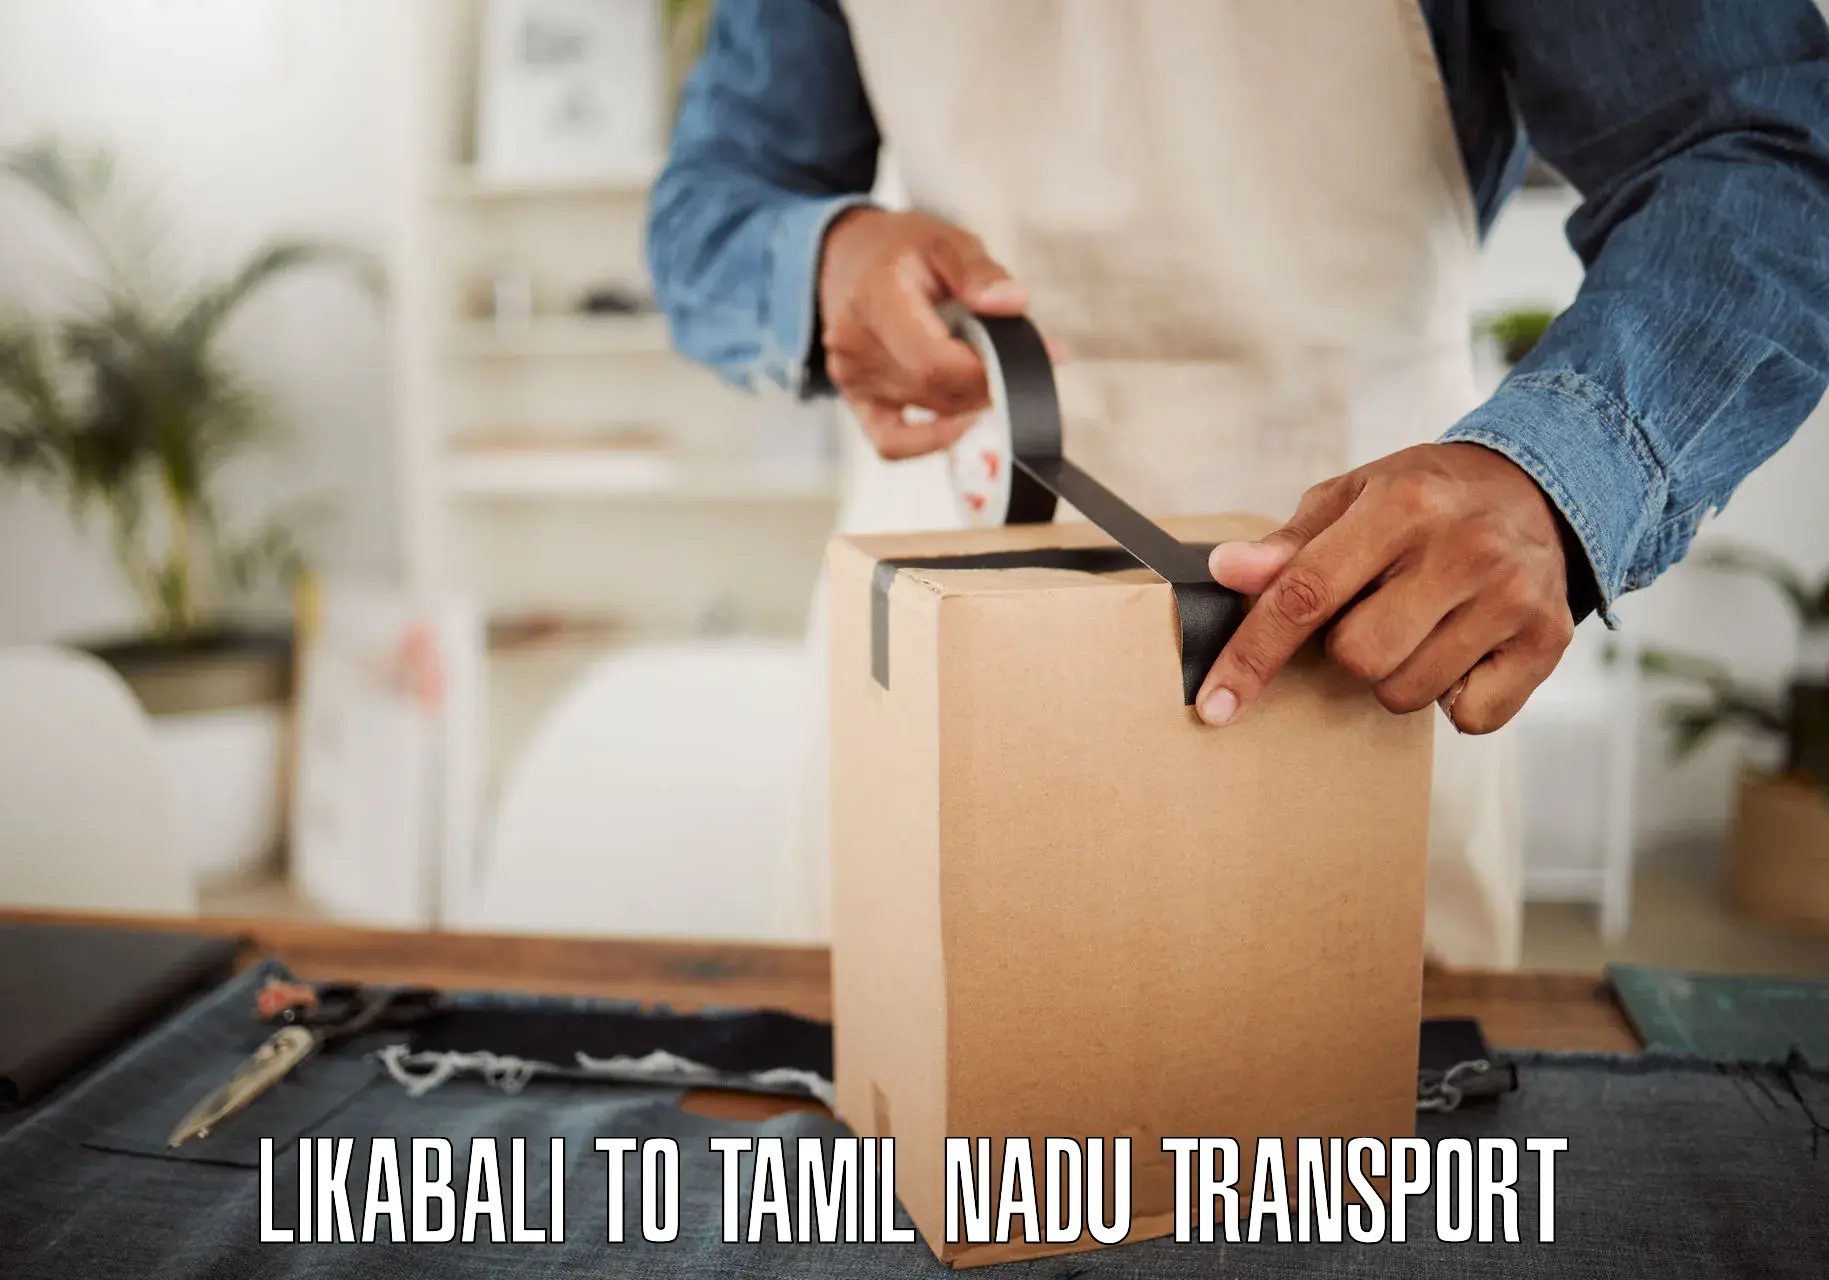 Commercial transport service Likabali to Tiruturaipundi